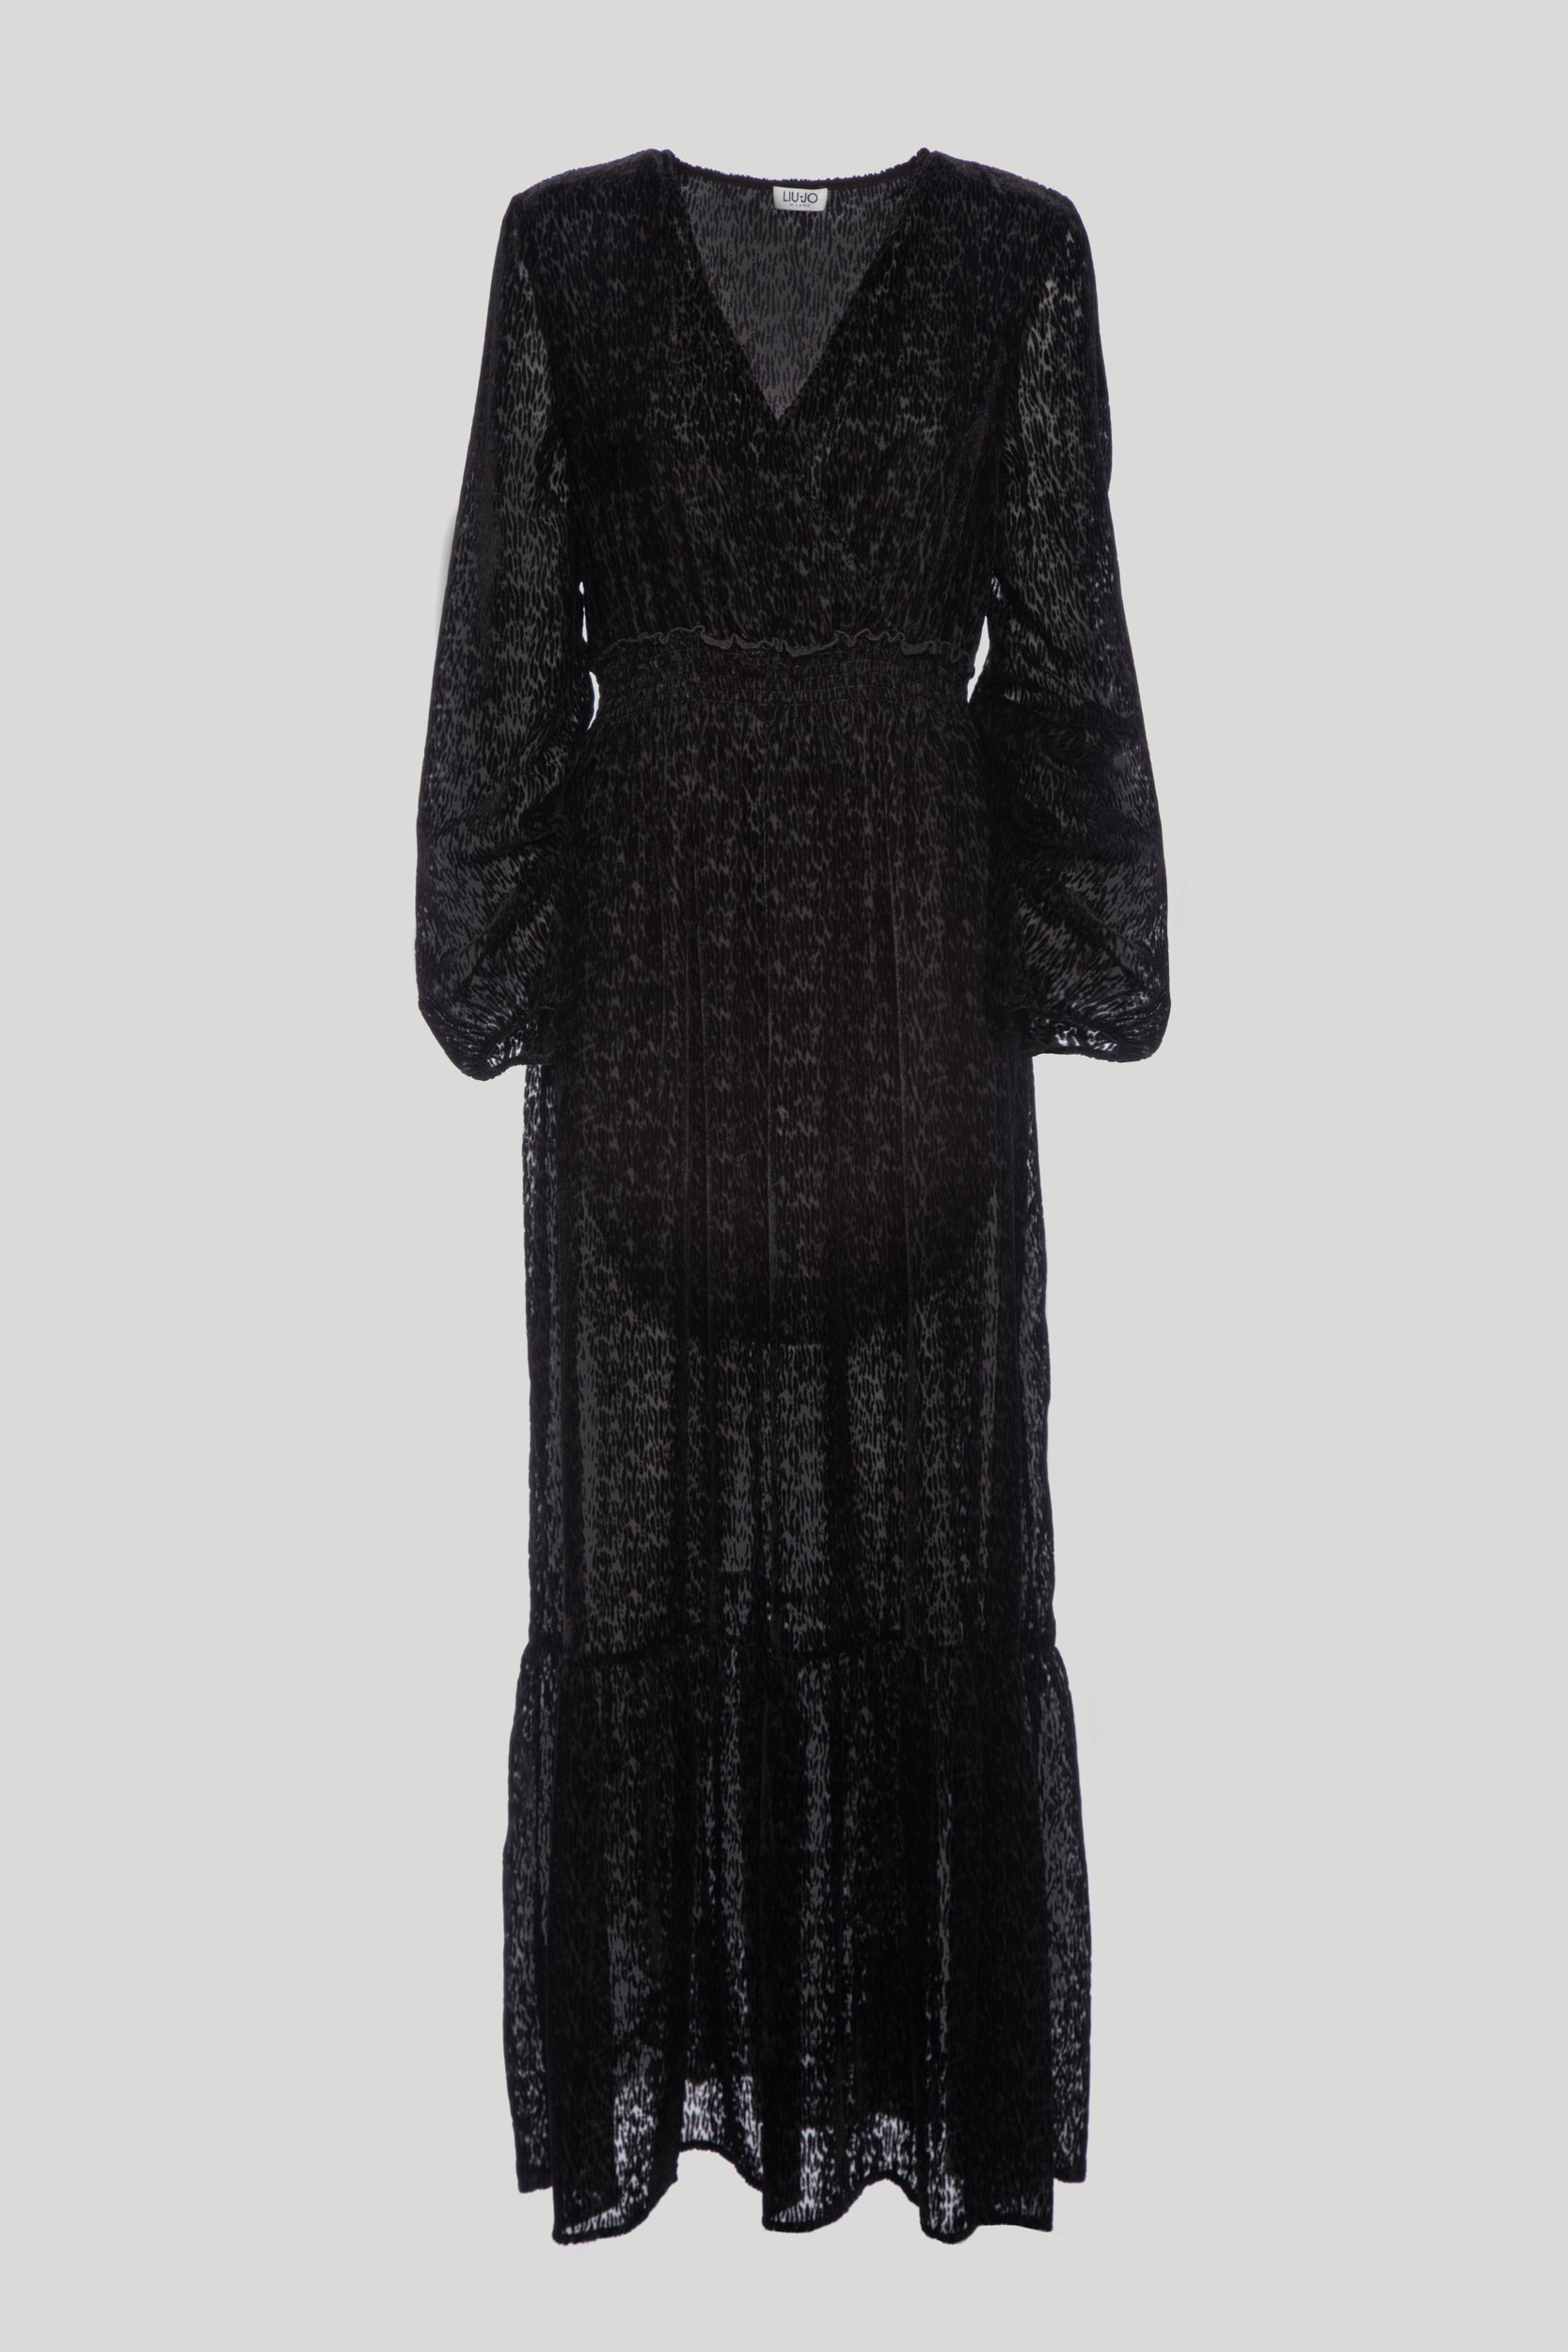 LIU JO Langes Kleid aus schwarzem Samt